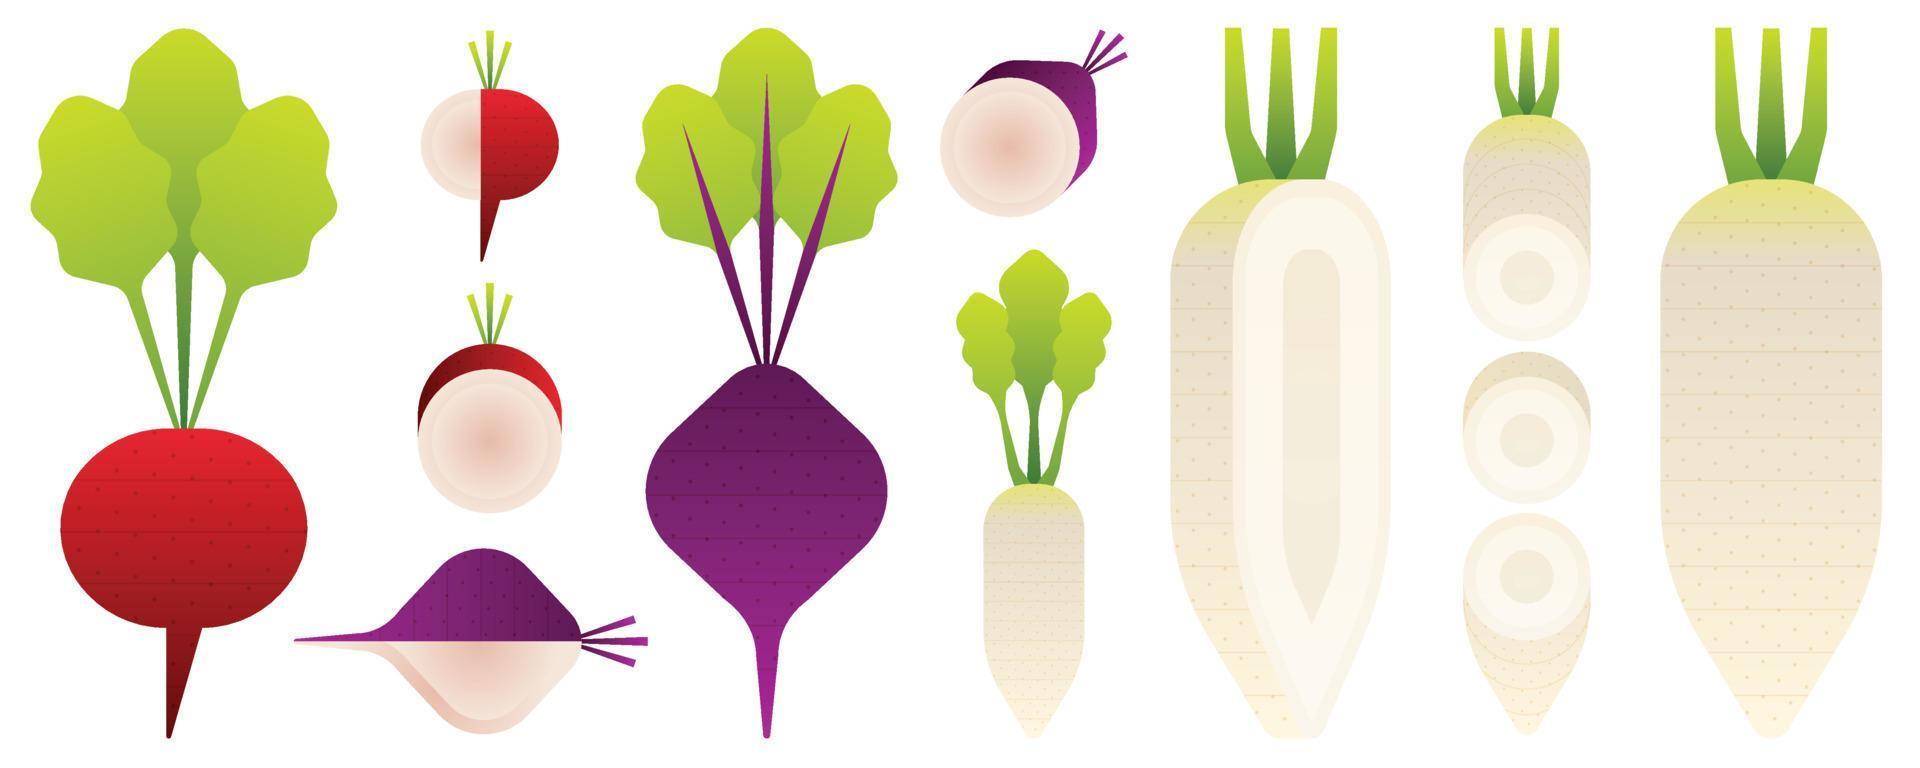 isoliertes Gemüse und Obst auf weißem Hintergrund. Vektor-Illustration. vektor